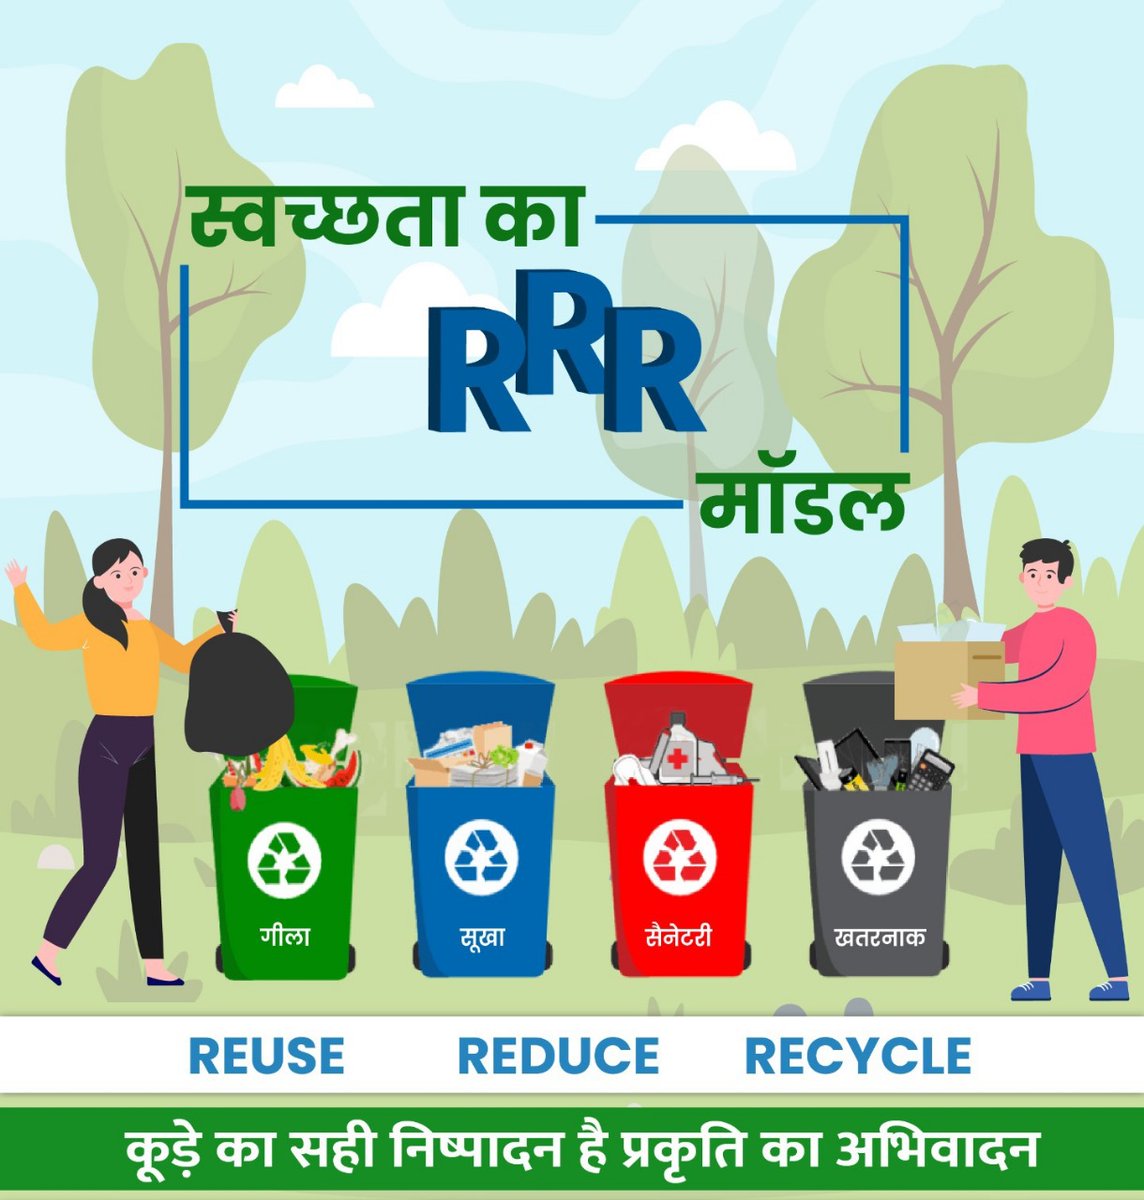 स्वच्छता का RRR मॉडल है:  अपनी अनुपयोगी वस्तुओं को रिड्यूज़, रियूज़ और रिसाइकिल कर पुन: उपयोग में लाते हुए कचरे का सही प्रबंधन करना। 

#SwachhataKiSeekh #SwachhBharat #GarbageFreeCities #IndiaVsGarbage #WasteSegregation